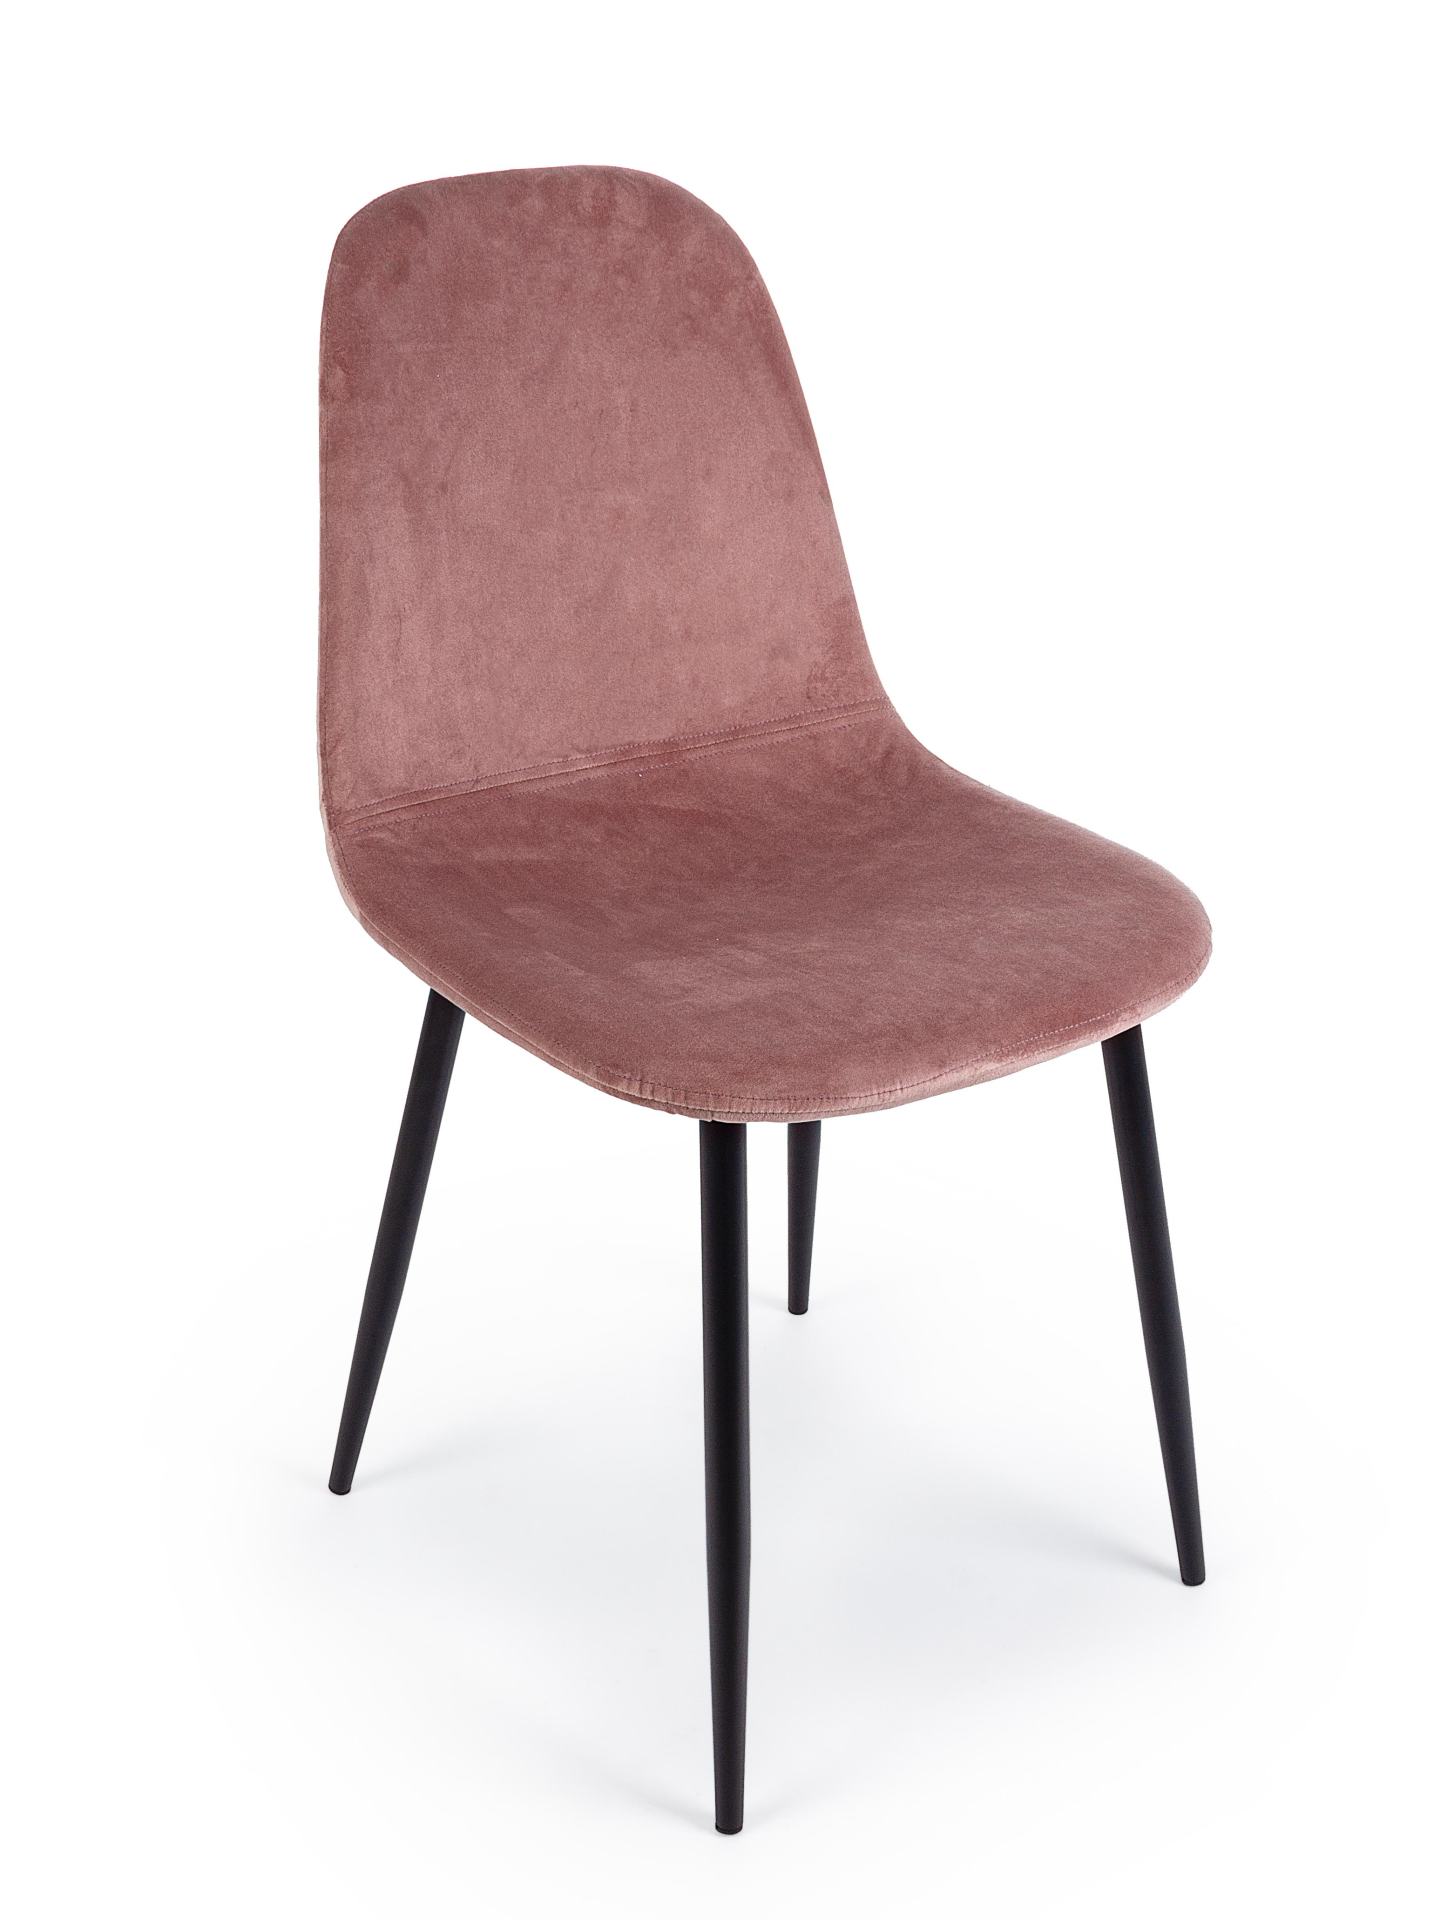 Der Esszimmerstuhl Irelia überzeugt mit seinem modernem Design. Gefertigt wurde der Stuhl aus einem Samt-Bezug, welcher einen rosa Farbton besitzt. Das Gestell ist aus Metall und ist schwarz. Die Sitzhöhe beträgt 47 cm.